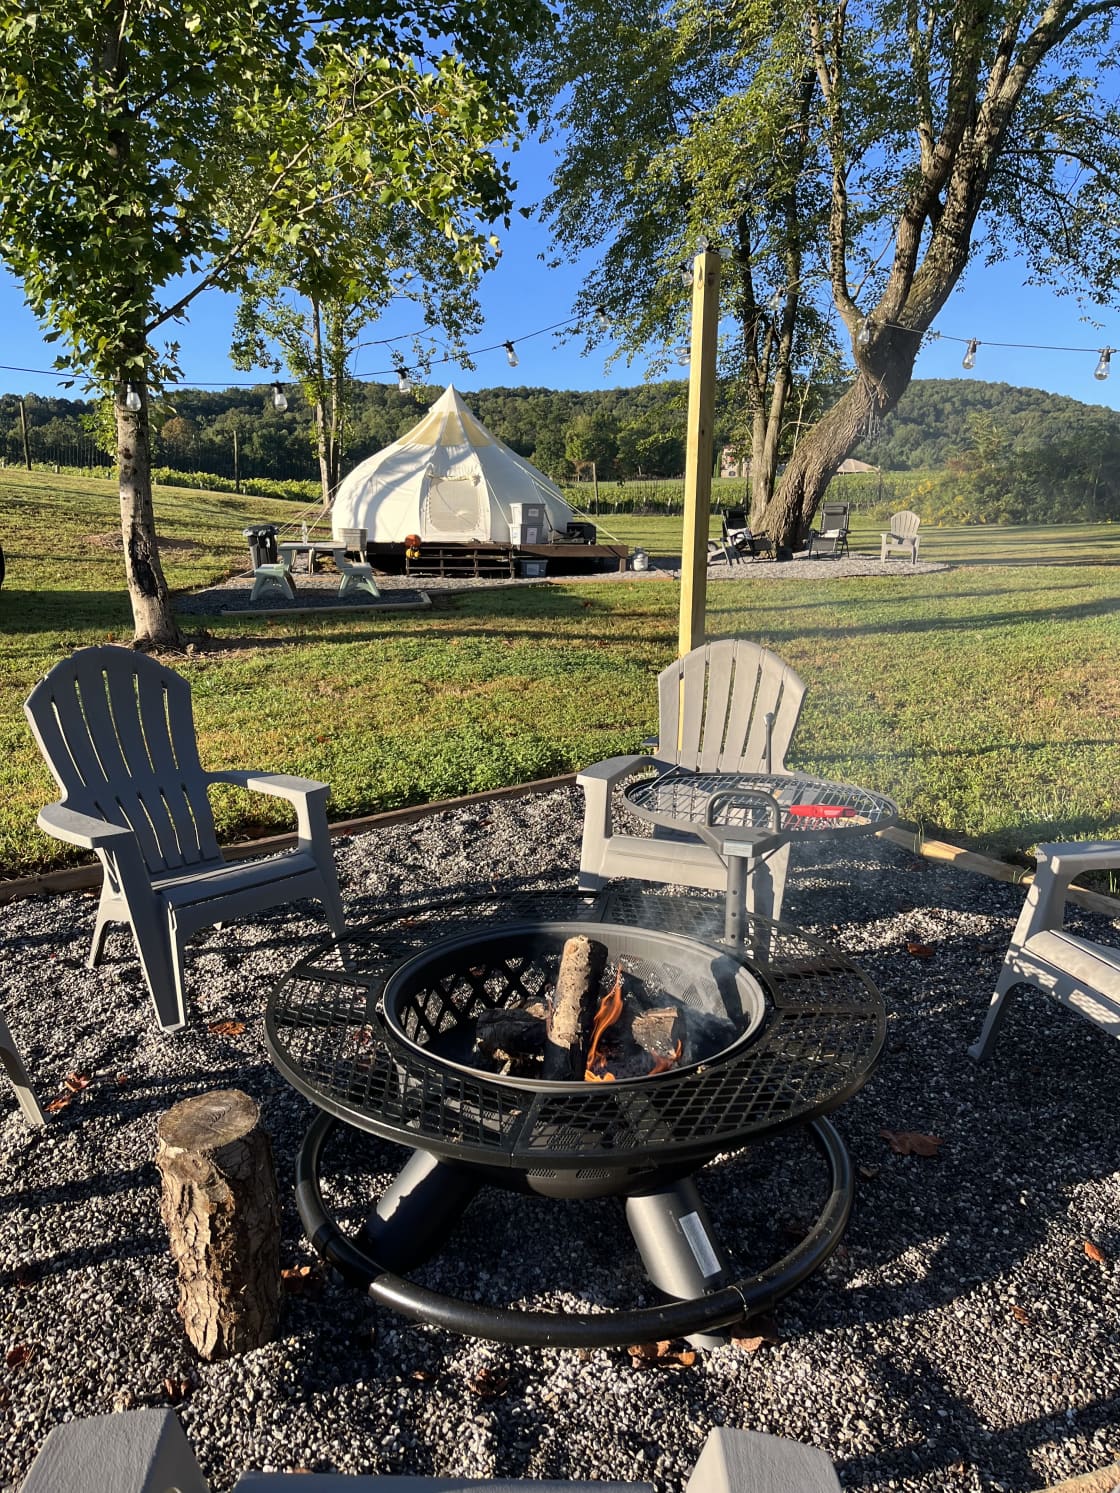 Morning campfire